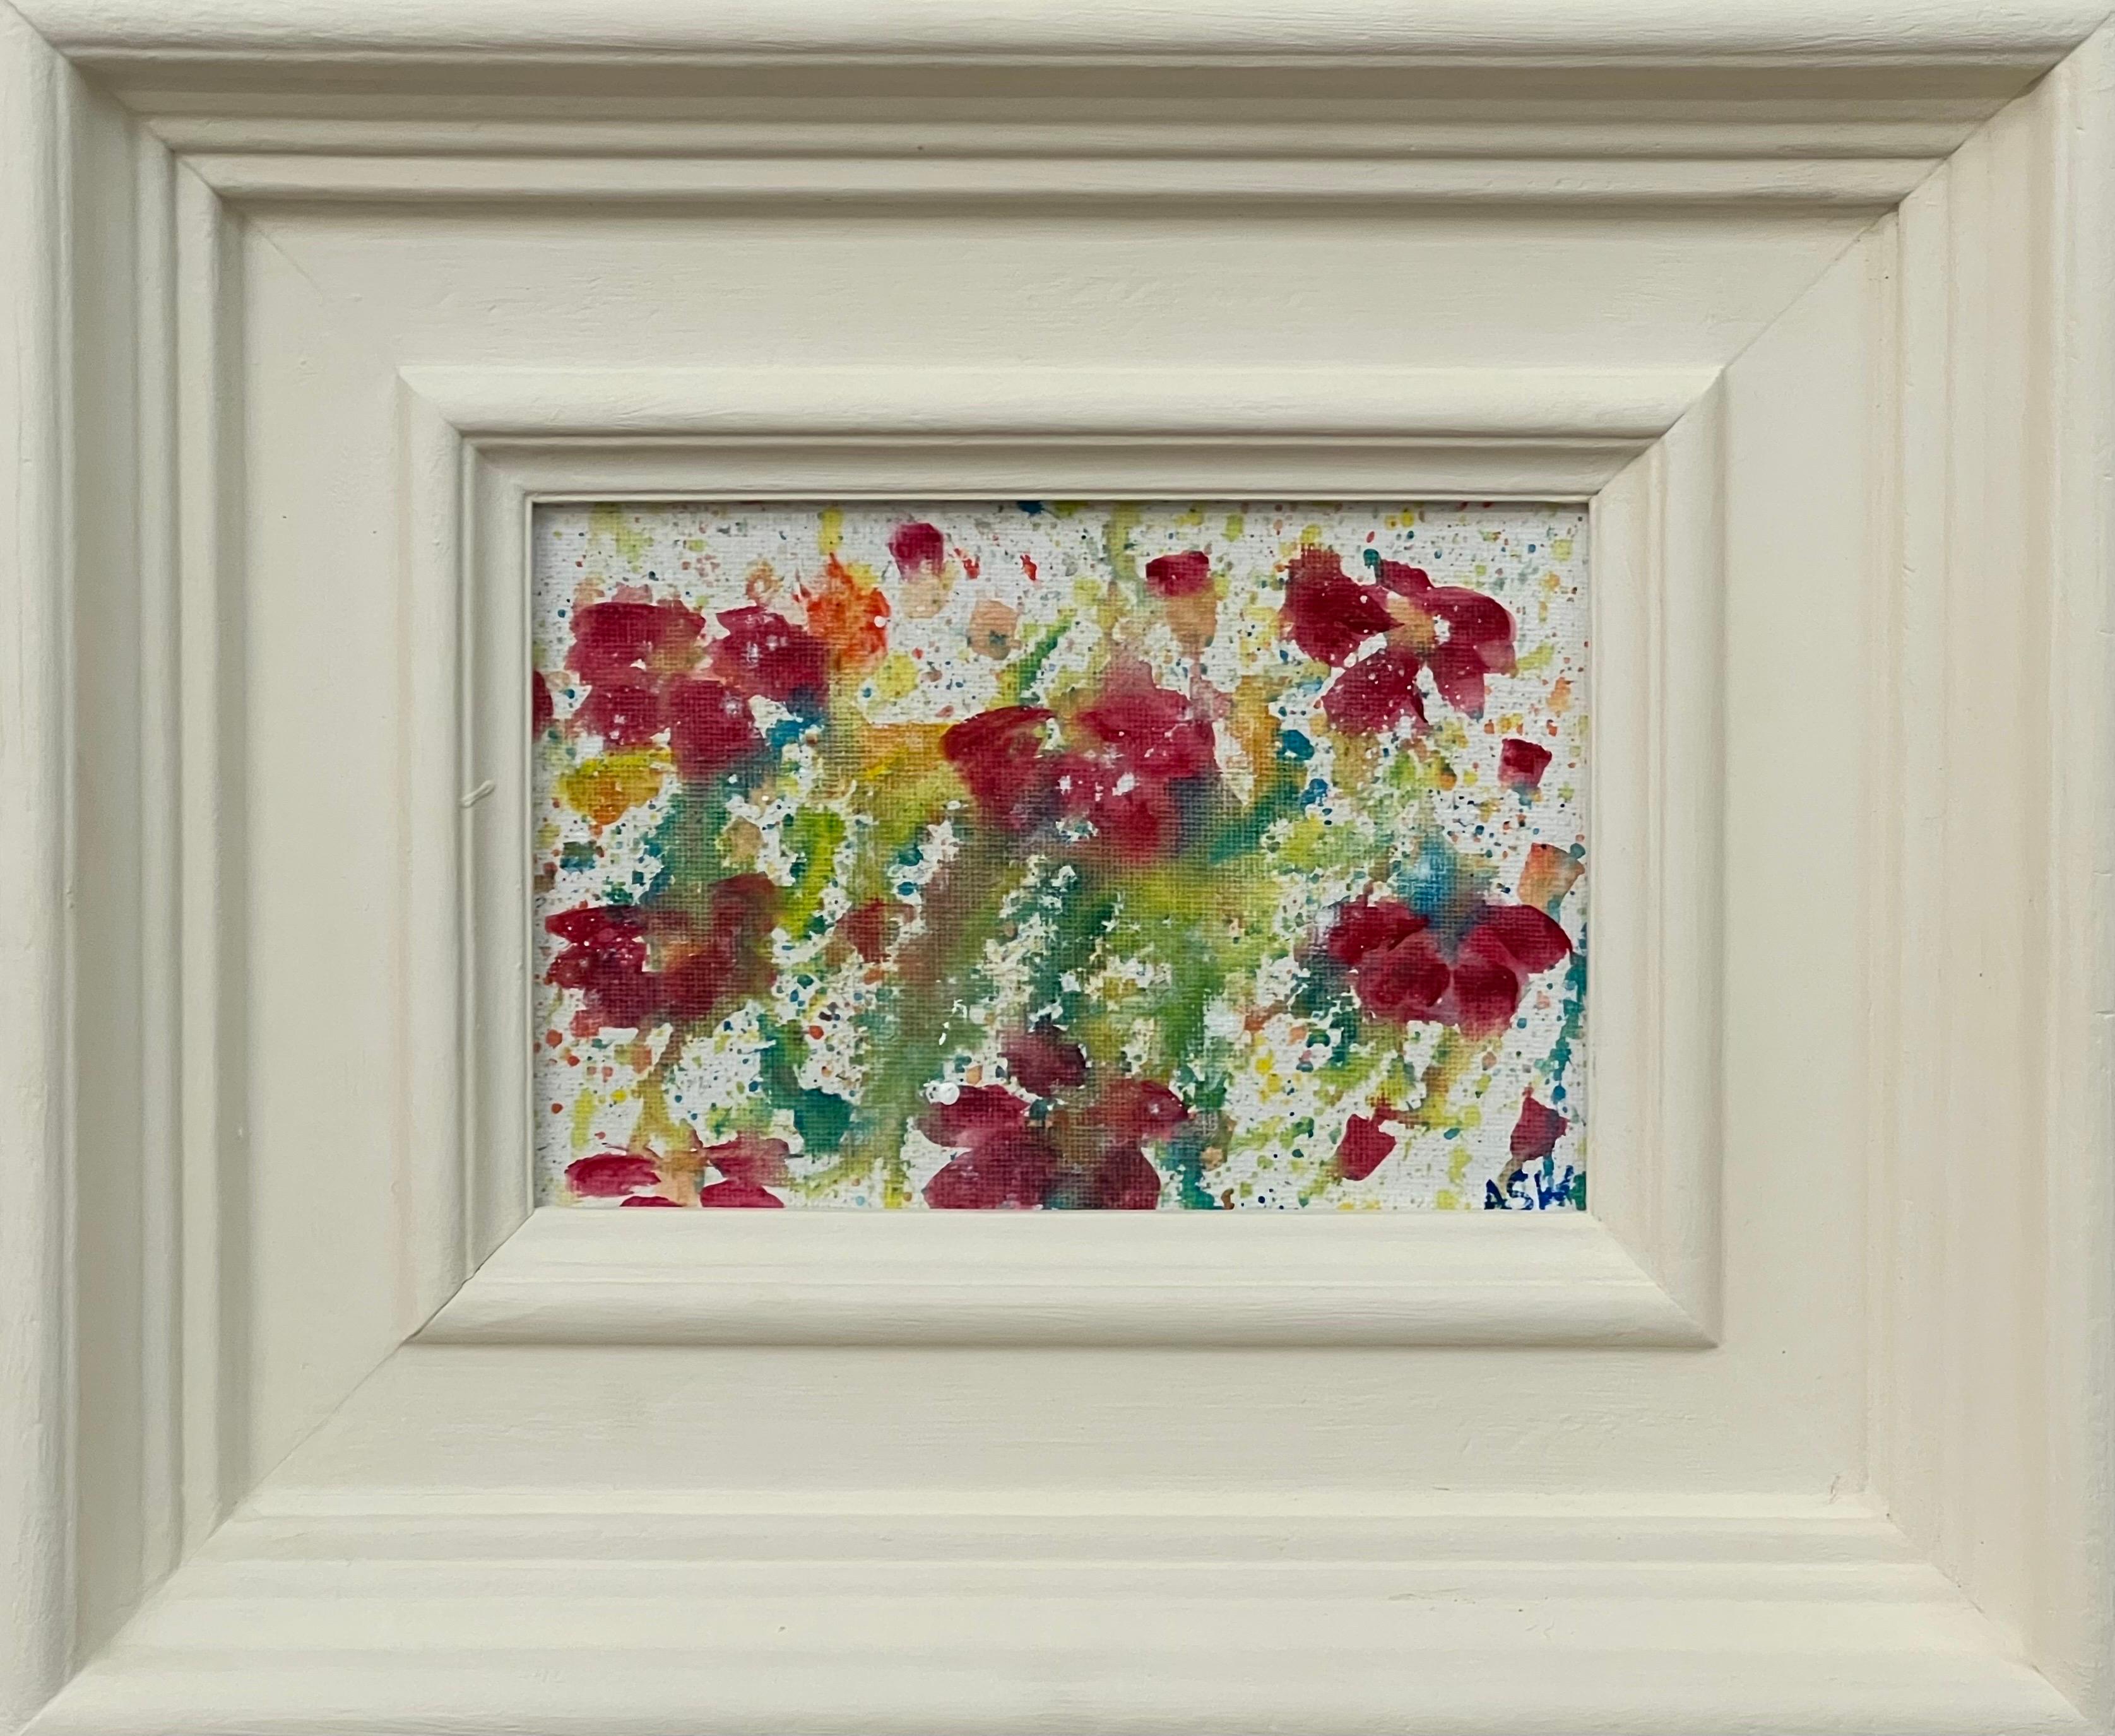 Étude de fleurs abstraites miniatures sur toile blanche d'un artiste britannique contemporain